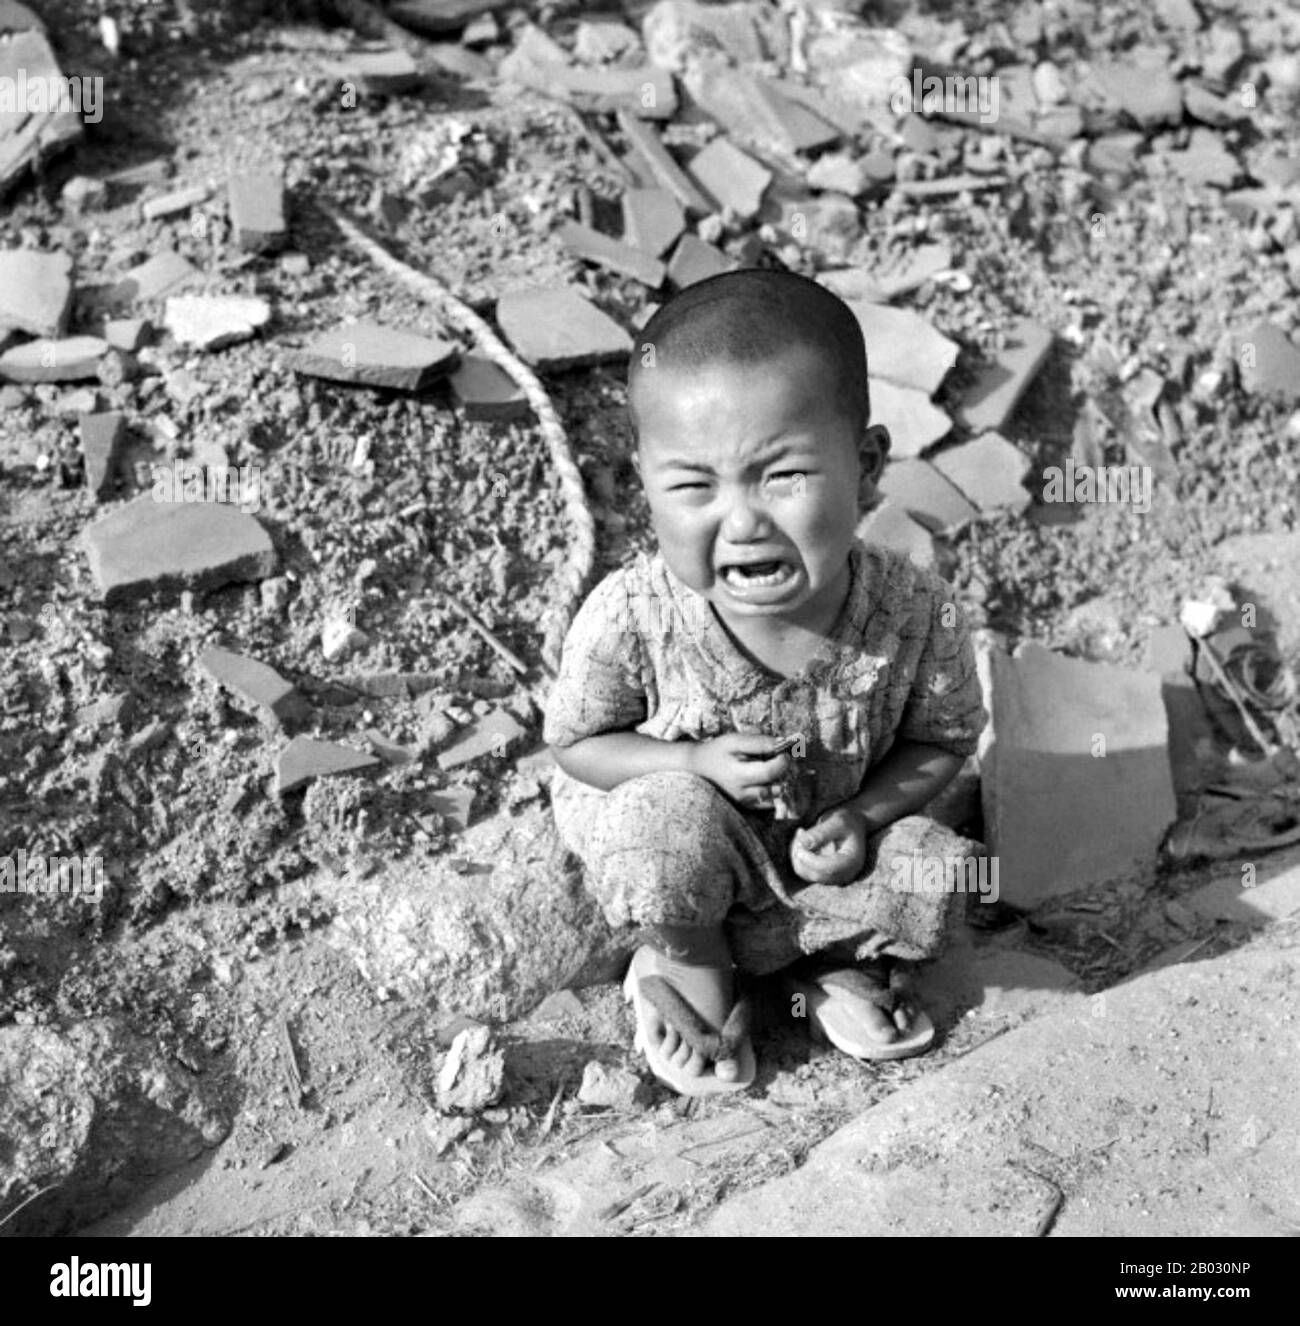 Am Montag, den 6. August 1945, um 8:15 Uhr wurde die Atombombe "Little Boy" von einem amerikanischen B-29-Bomber, der Enola Homosexual, auf Hiroshima abgeworfen und tötete direkt schätzungsweise 80.000 Menschen. Bis Ende des Jahres brachten Verletzungen und Strahlung die Gesamtzahl der Todesfälle auf 90.000-166.000. Die Einwohnerzahl vor dem Bombenanschlag betrug rund 340.000 bis 350.000. Etwa 70 % der Gebäude der Stadt wurden zerstört, weitere 7 % schwer beschädigt. Stockfoto